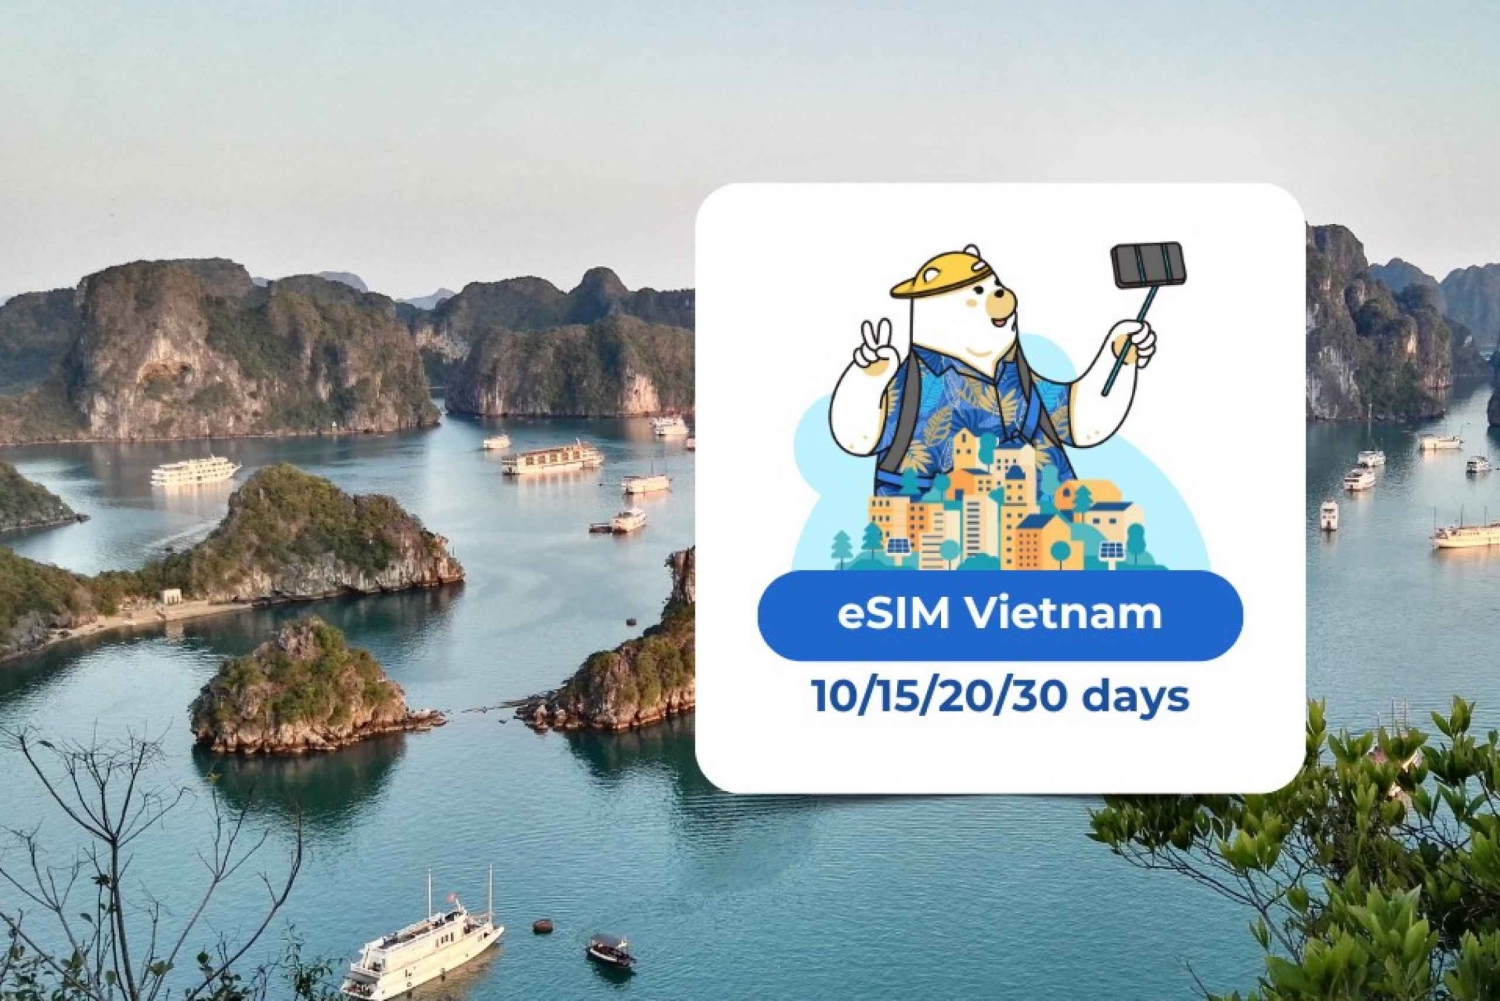 Vietnam eSIM: Roaming Mobile Data Plan 10/15/20/30 days